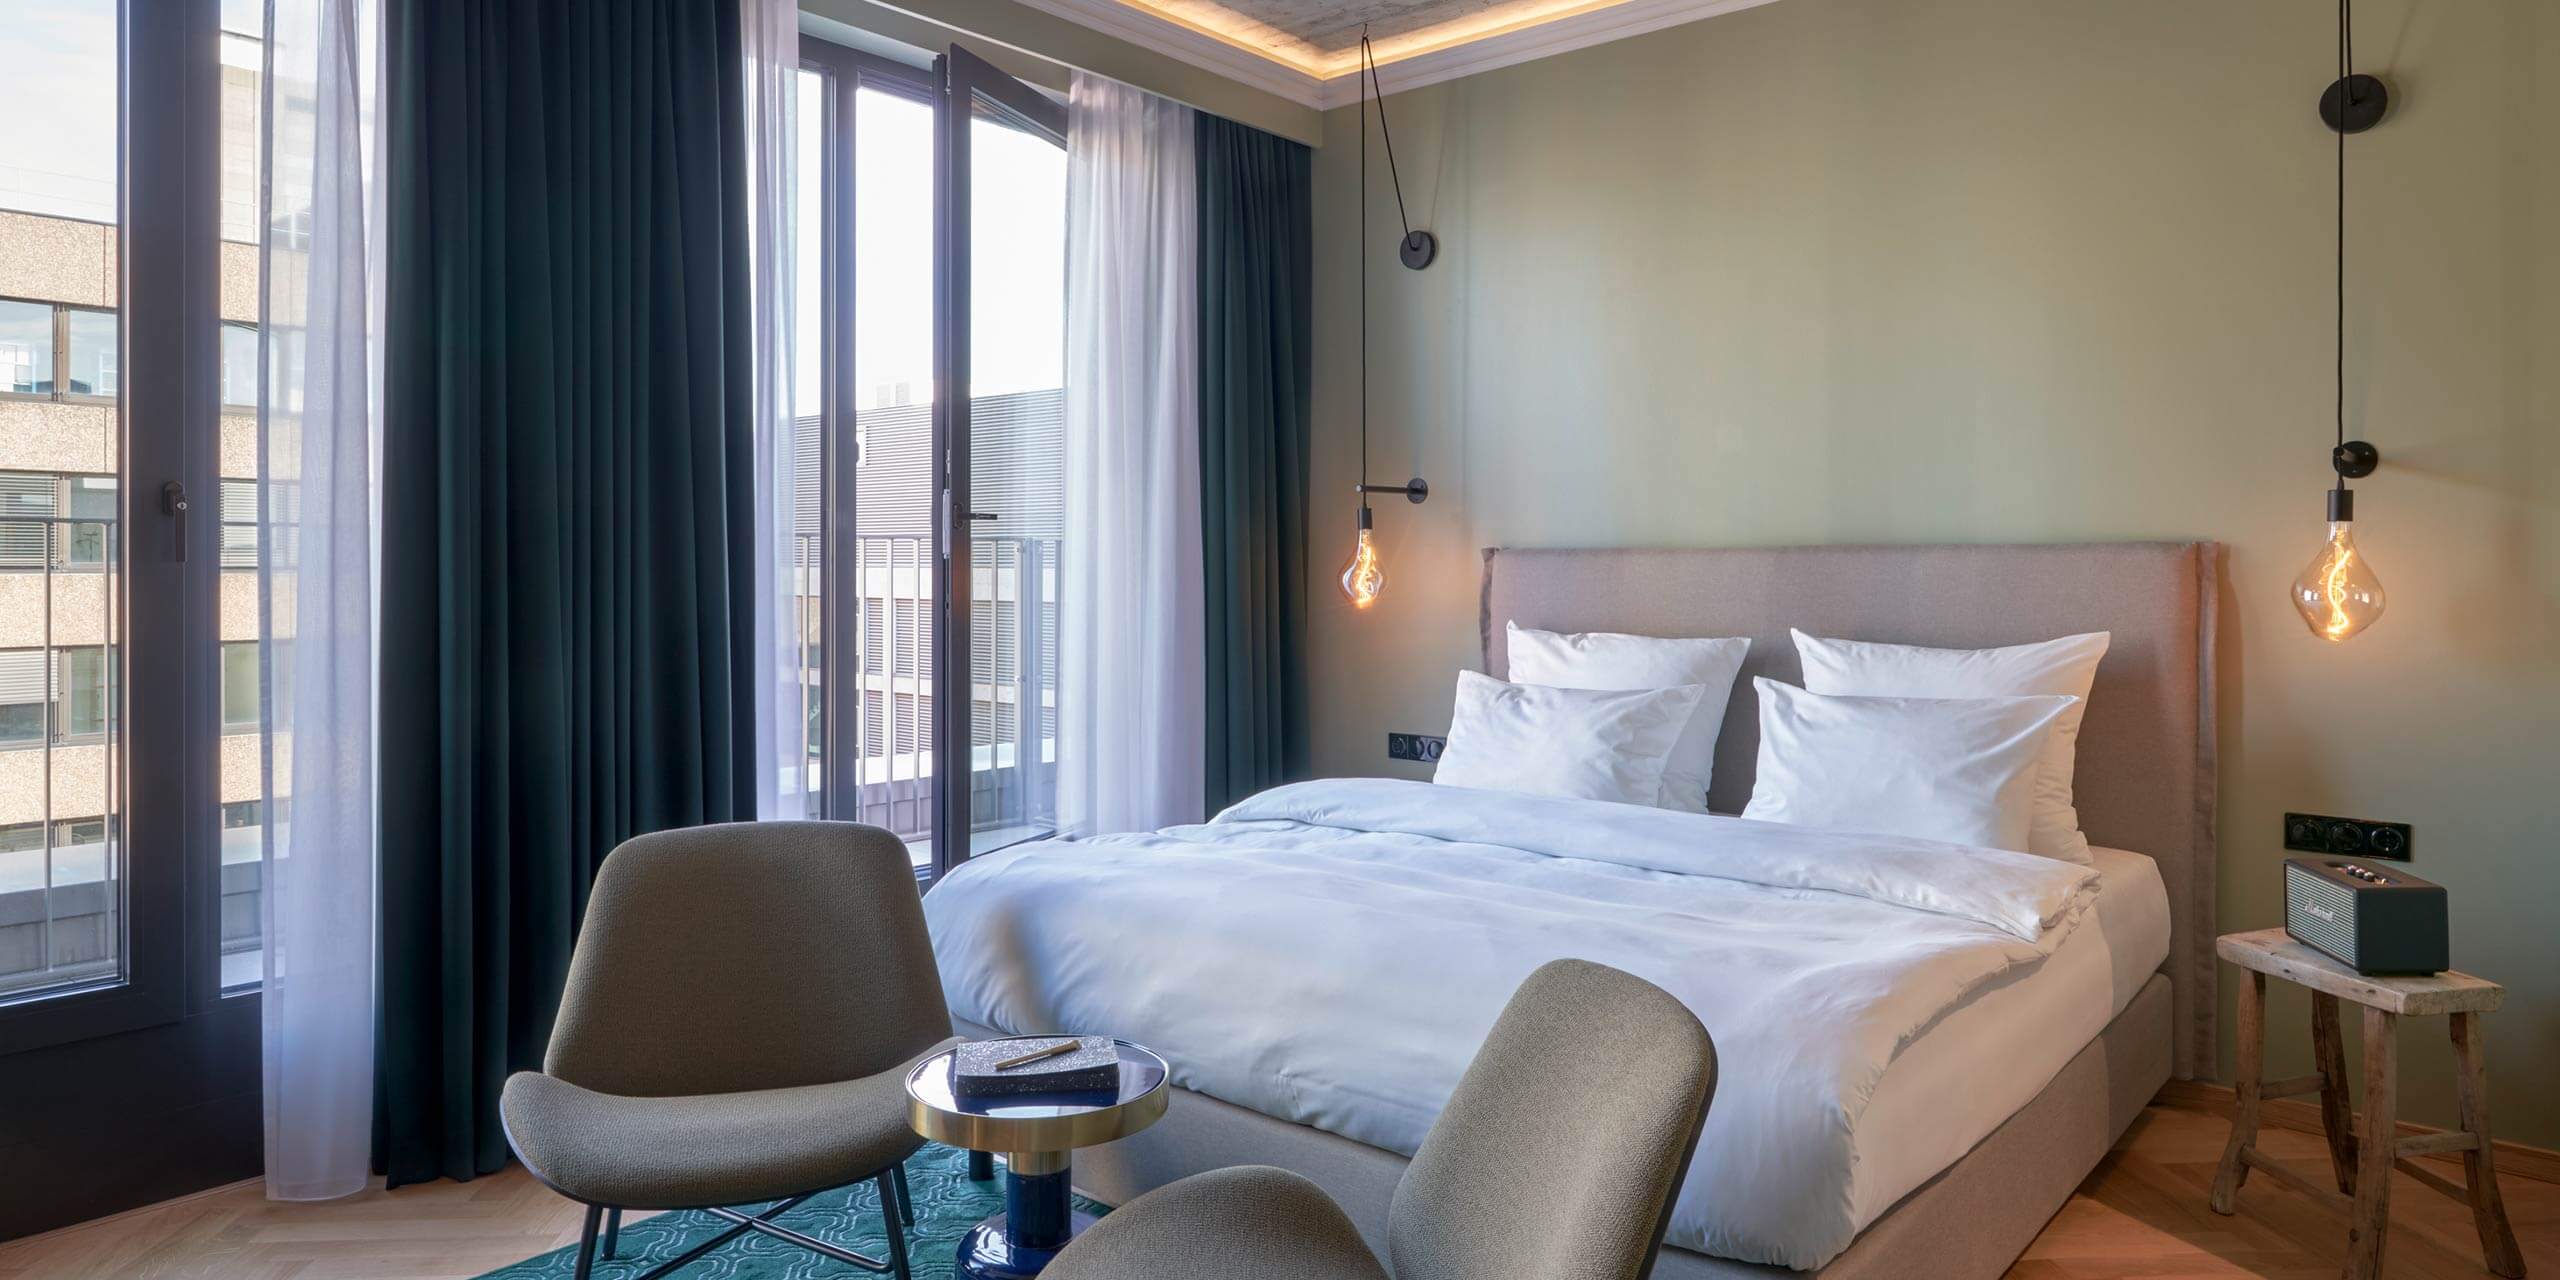 Select Balcony Room: Stühle vor dem Bett und ein kleiner Beistelltisch auf einem grünen Teppich